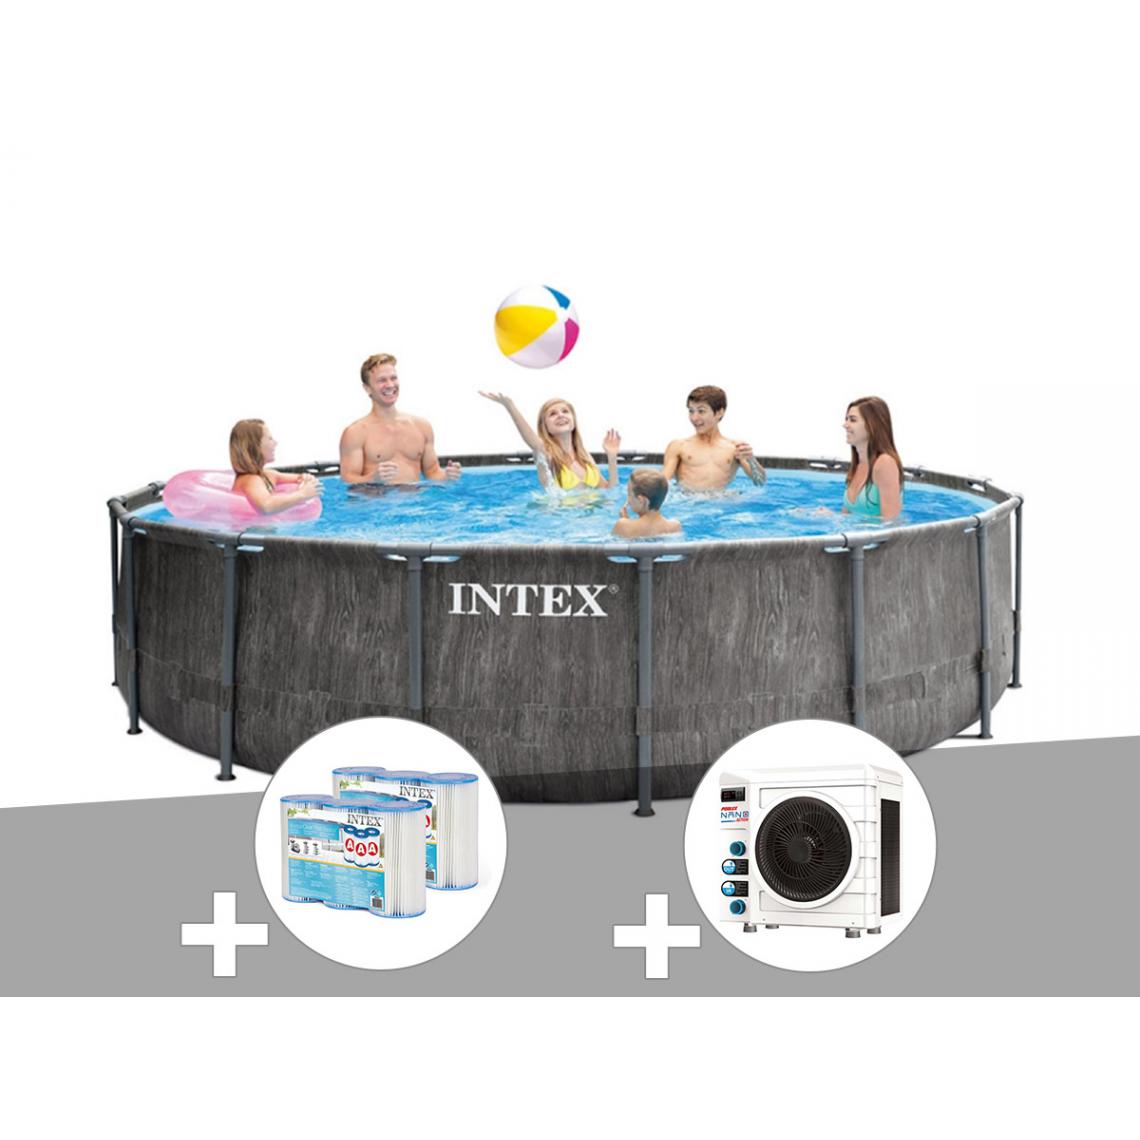 Intex - Kit piscine tubulaire Intex Baltik ronde 4,57 x 1,22 m + 6 cartouches de filtration + Pompe à chaleur - Piscine Tubulaire